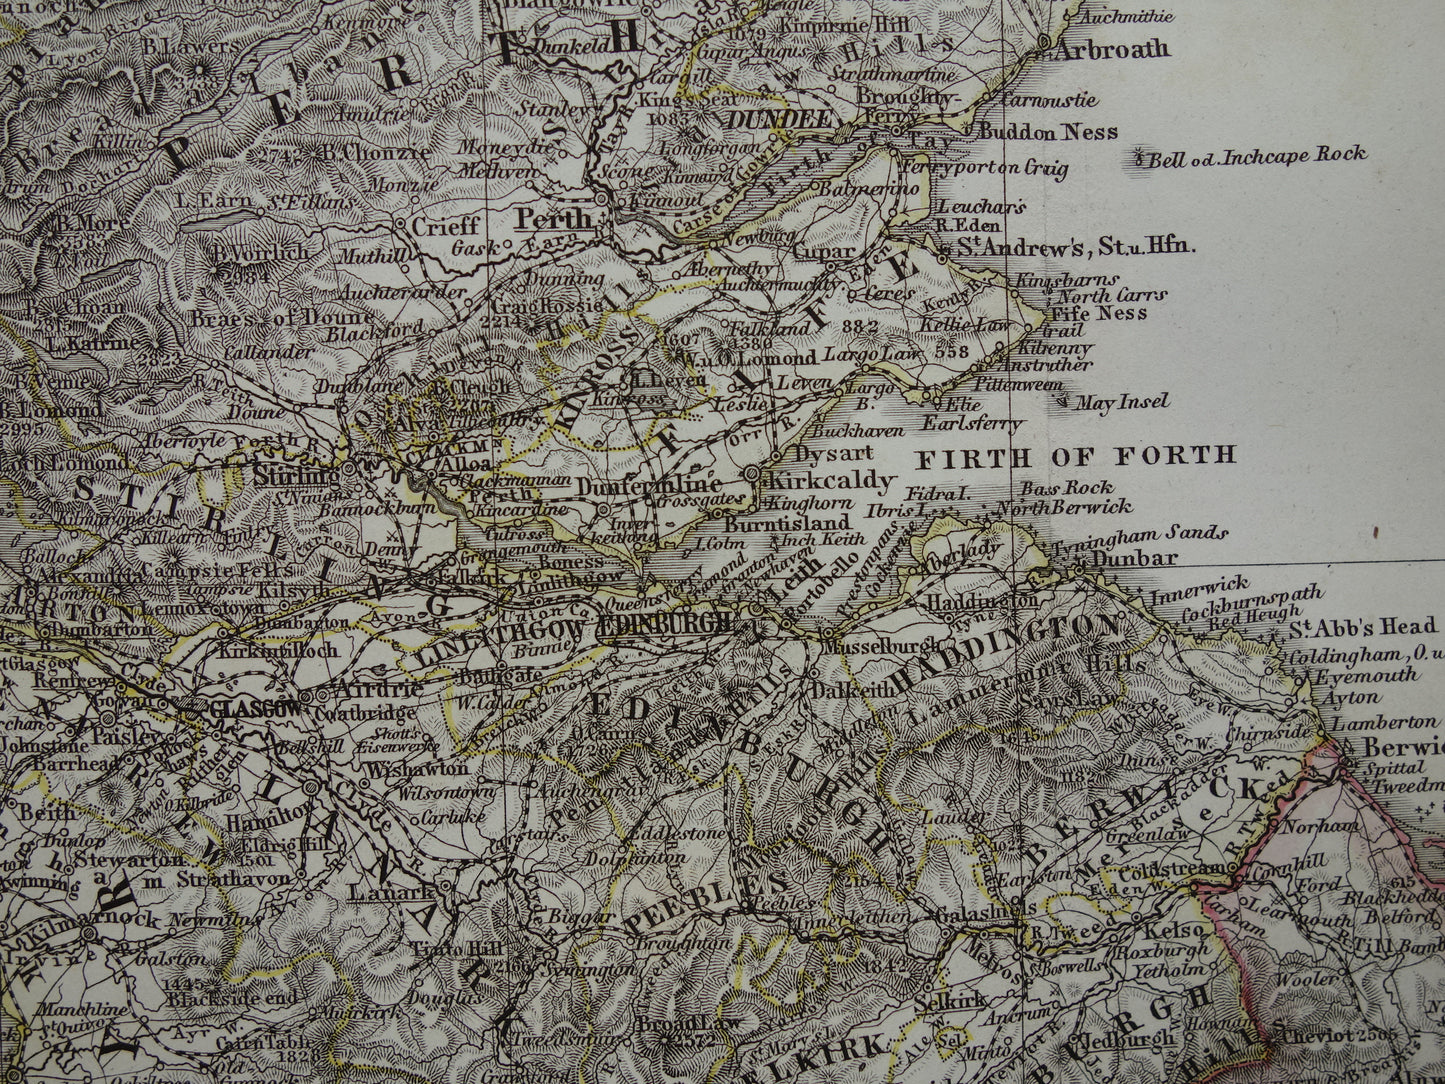 SCHOTLAND oude kaart van Schotland in 1868 originele antieke landkaart Edinburgh Glasgow vintage met jaartal